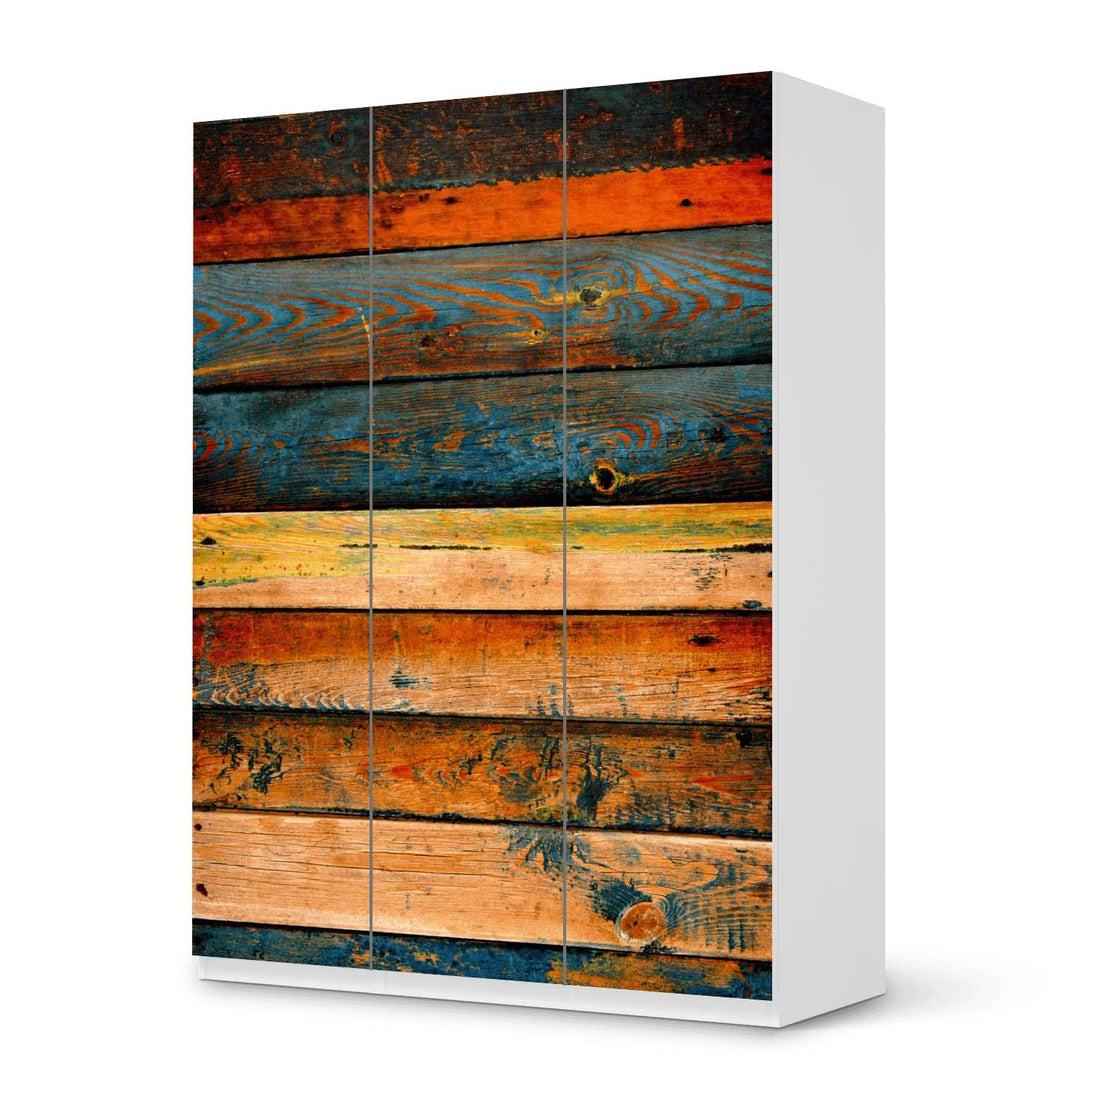 Folie für Möbel Wooden - IKEA Pax Schrank 201 cm Höhe - 3 Türen - weiss